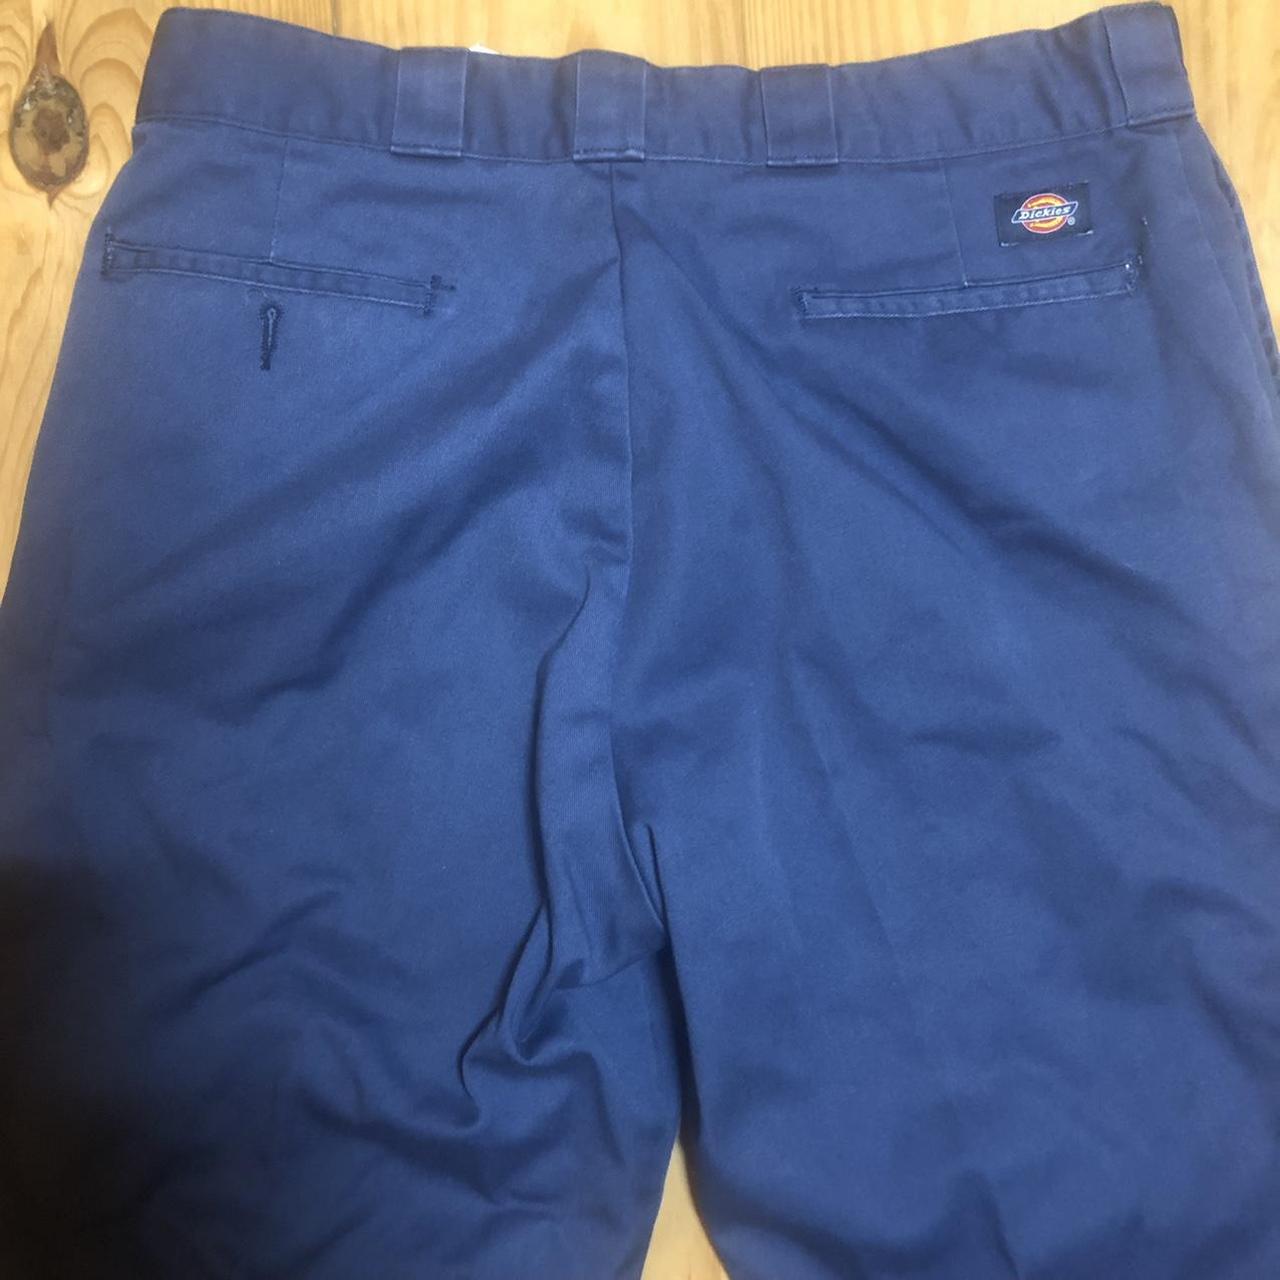 Dickies blue pants work chino skate pants 36x32 navy... - Depop